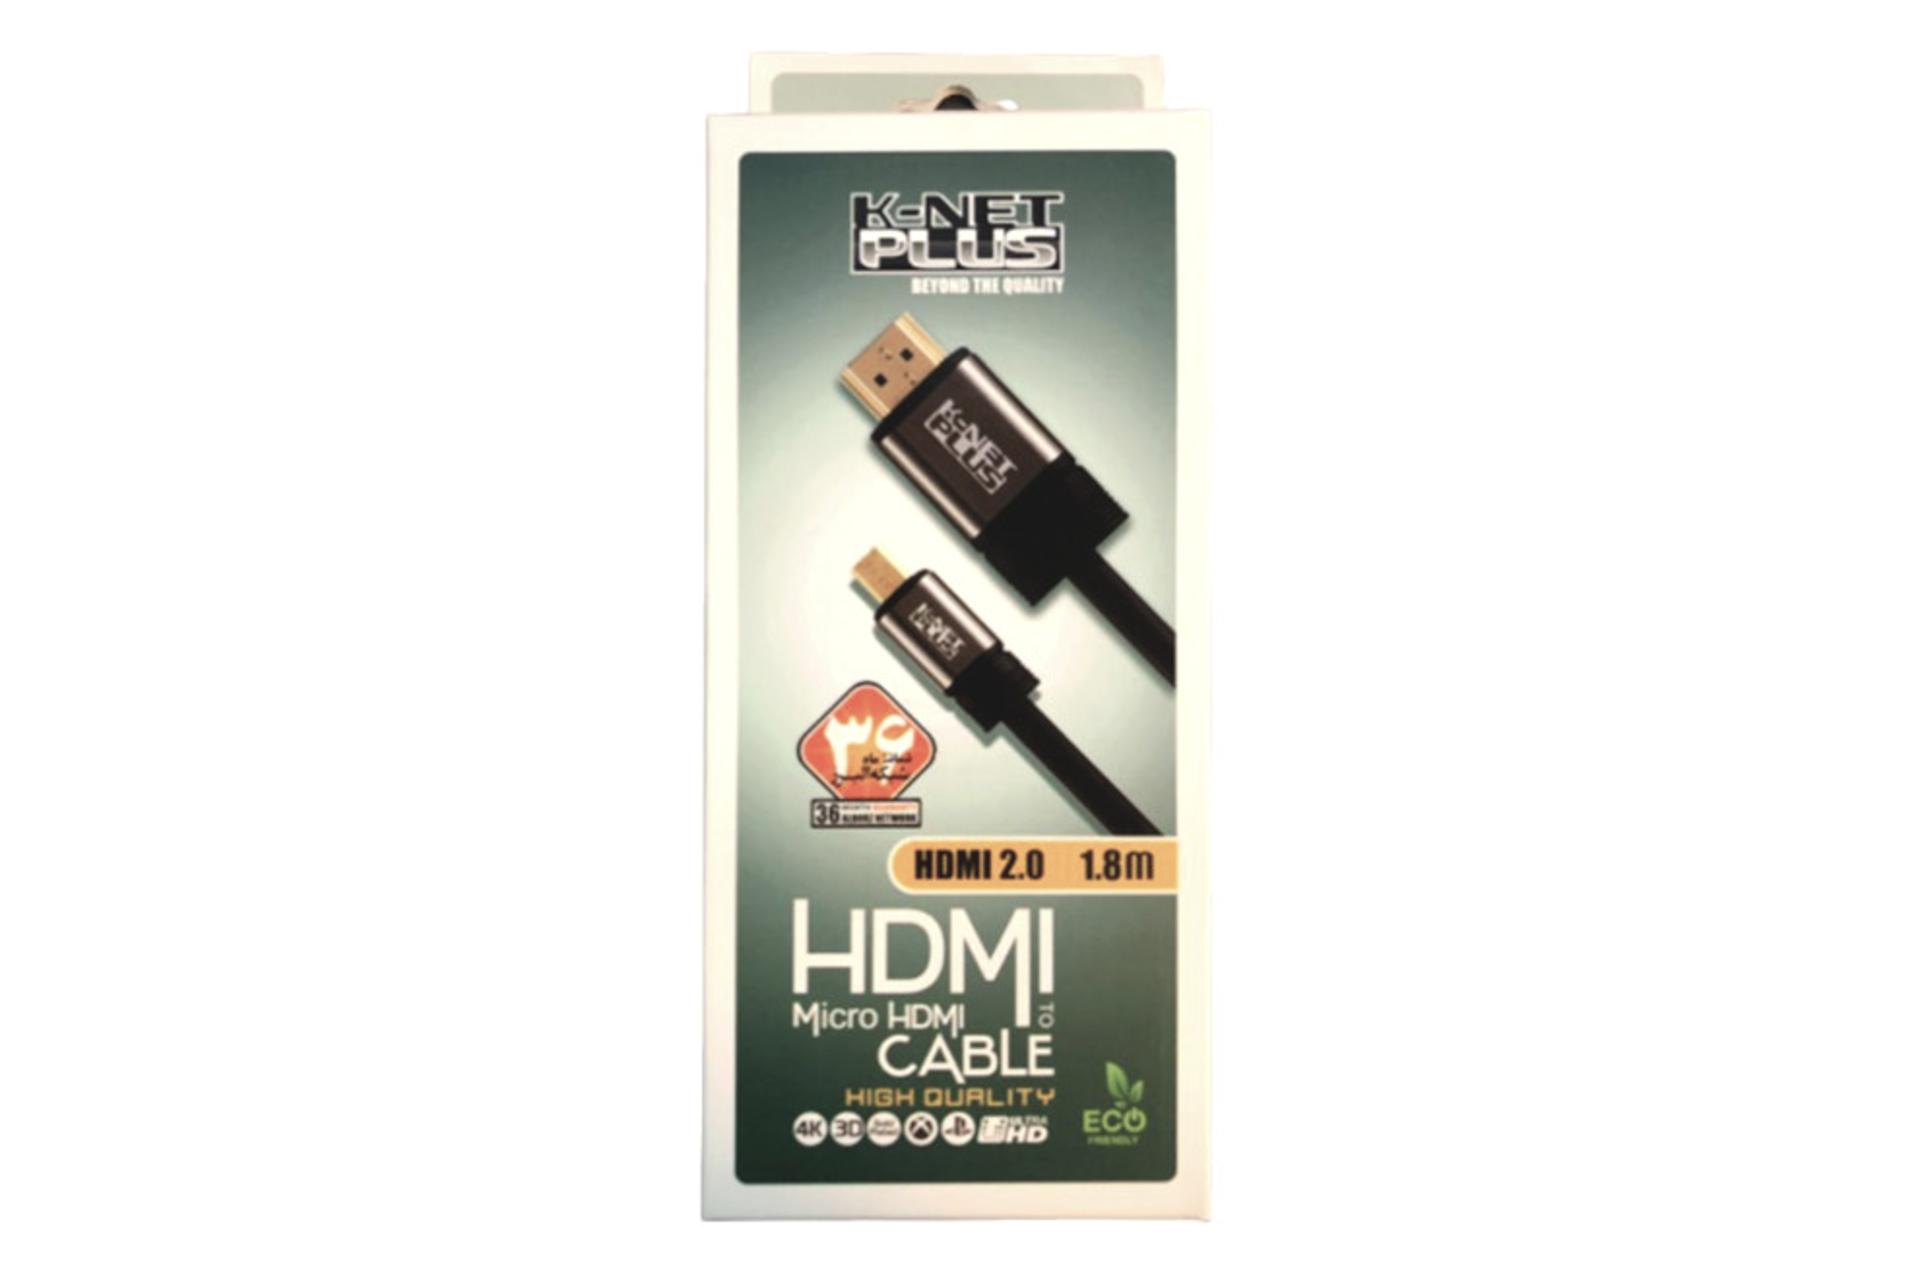 جعبه کابل کی نت پلاس HDMI به Micro HDMI مدل K-Net Plus KP-CHM2018 با طول 1.8 متر